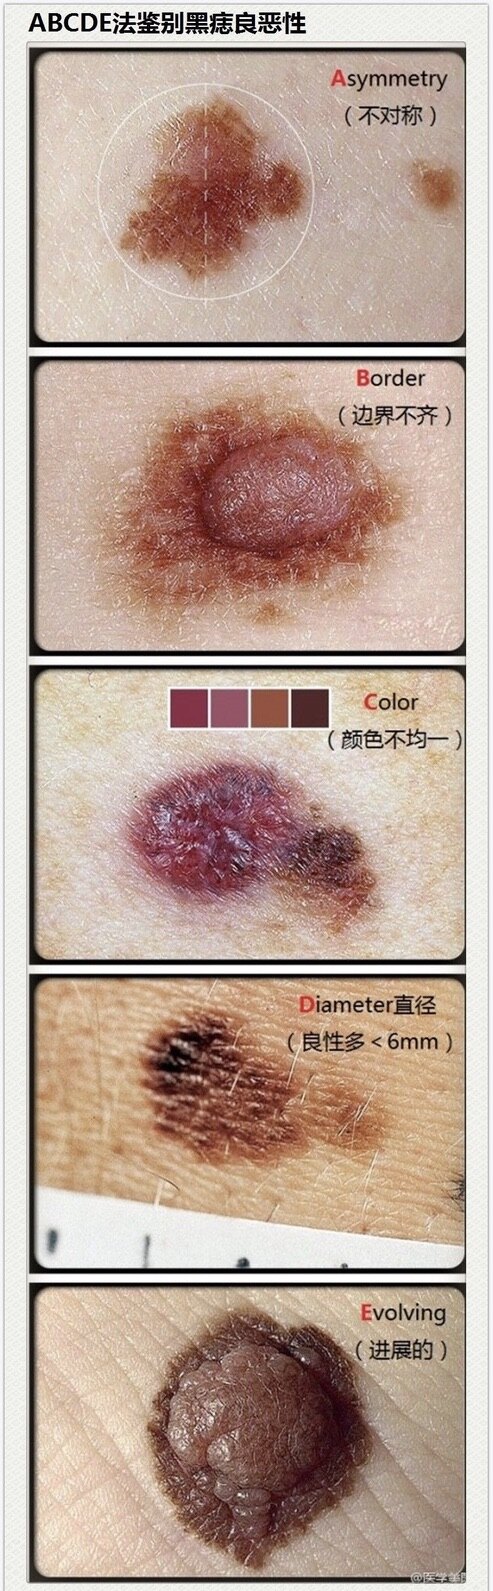 黑色素瘤肿瘤标志物图片